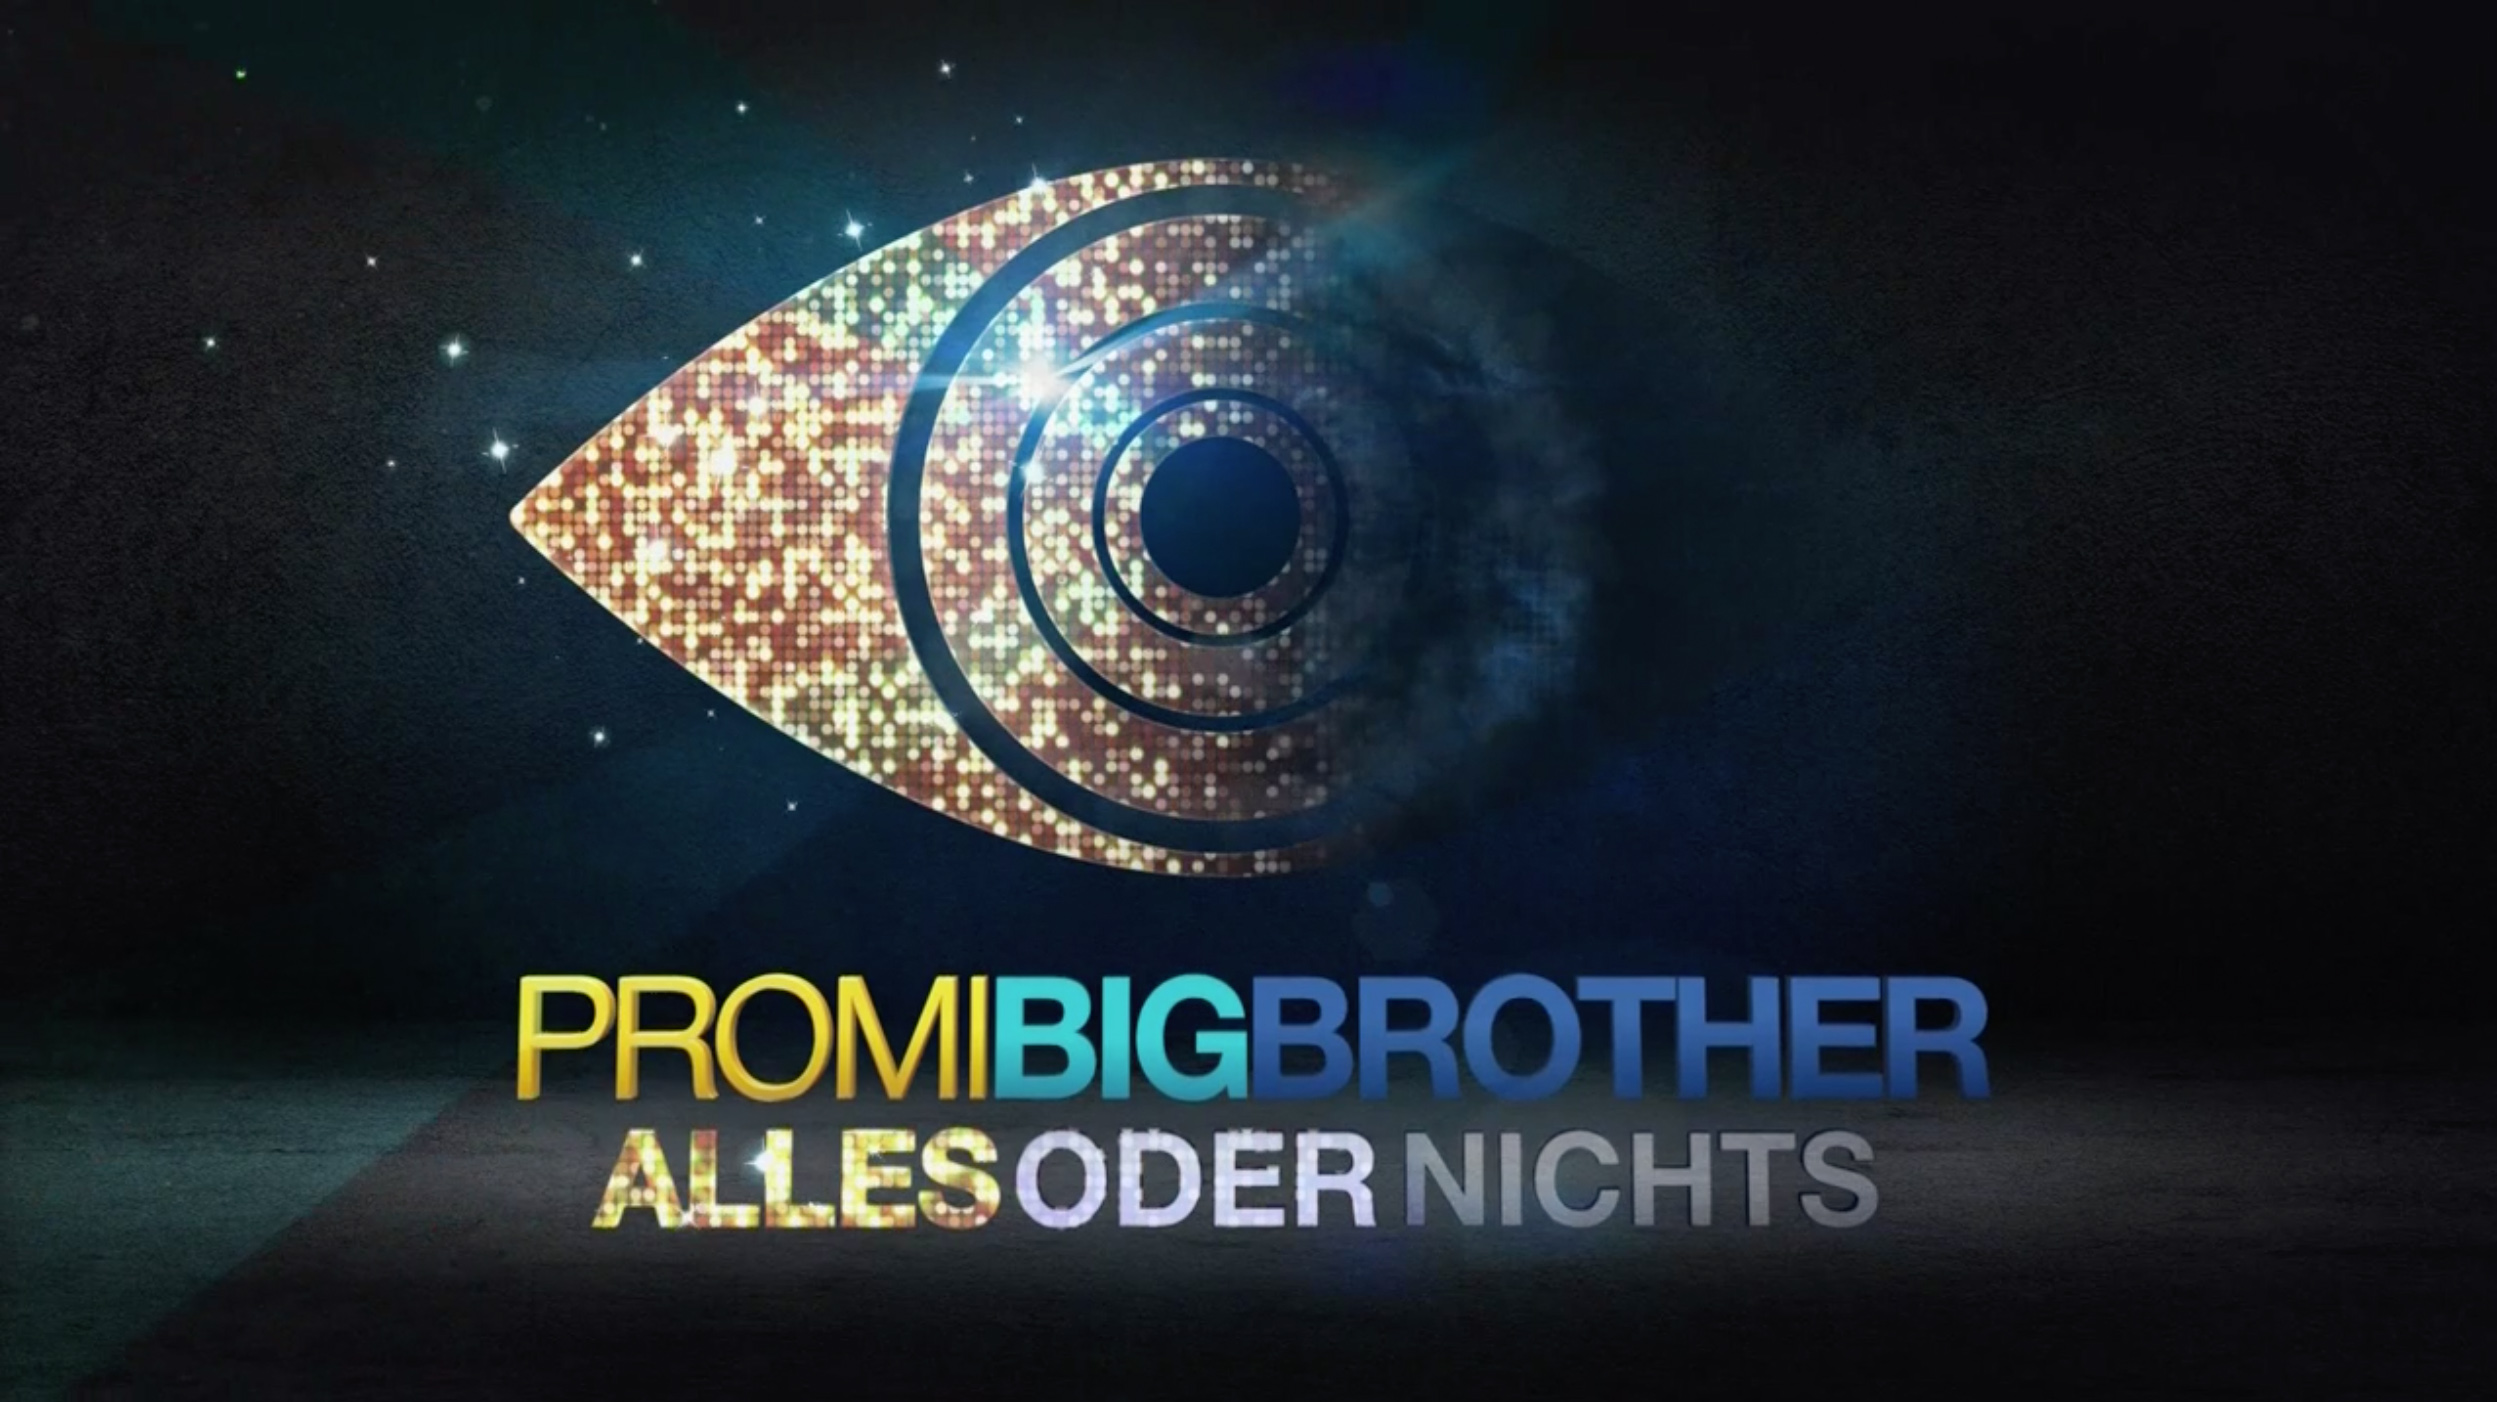 Promi Big Brother: Alles oder Nichts (Kandidaten vorstellen)